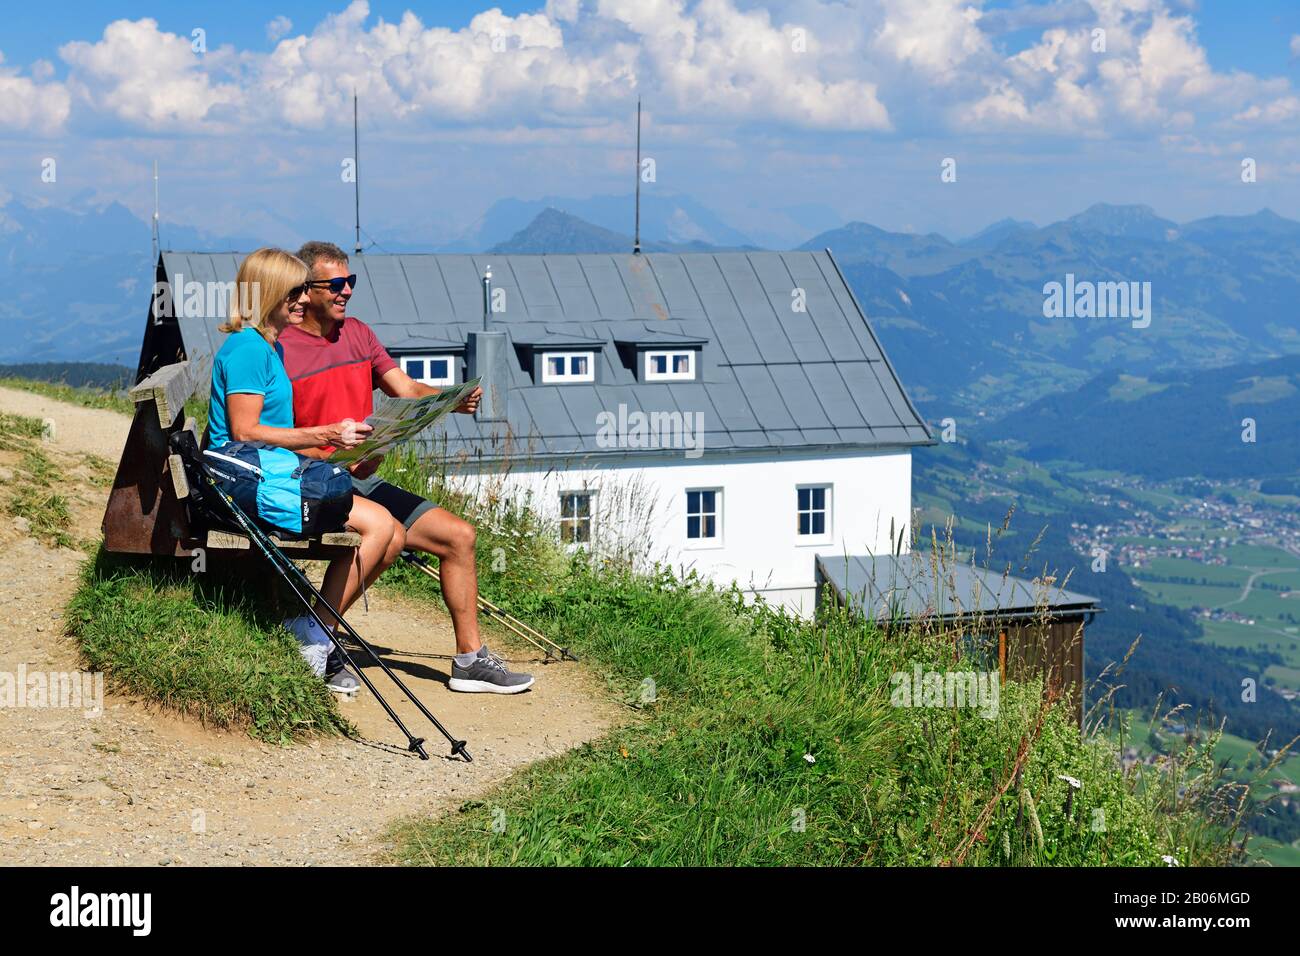 Gli escursionisti sulla cima panoramica sentiero del Salve Hohe fare una pausa sulla cima, Hopfgarten, Brixental, Alpi Kitzbuehel, Tirolo, Austria Foto Stock